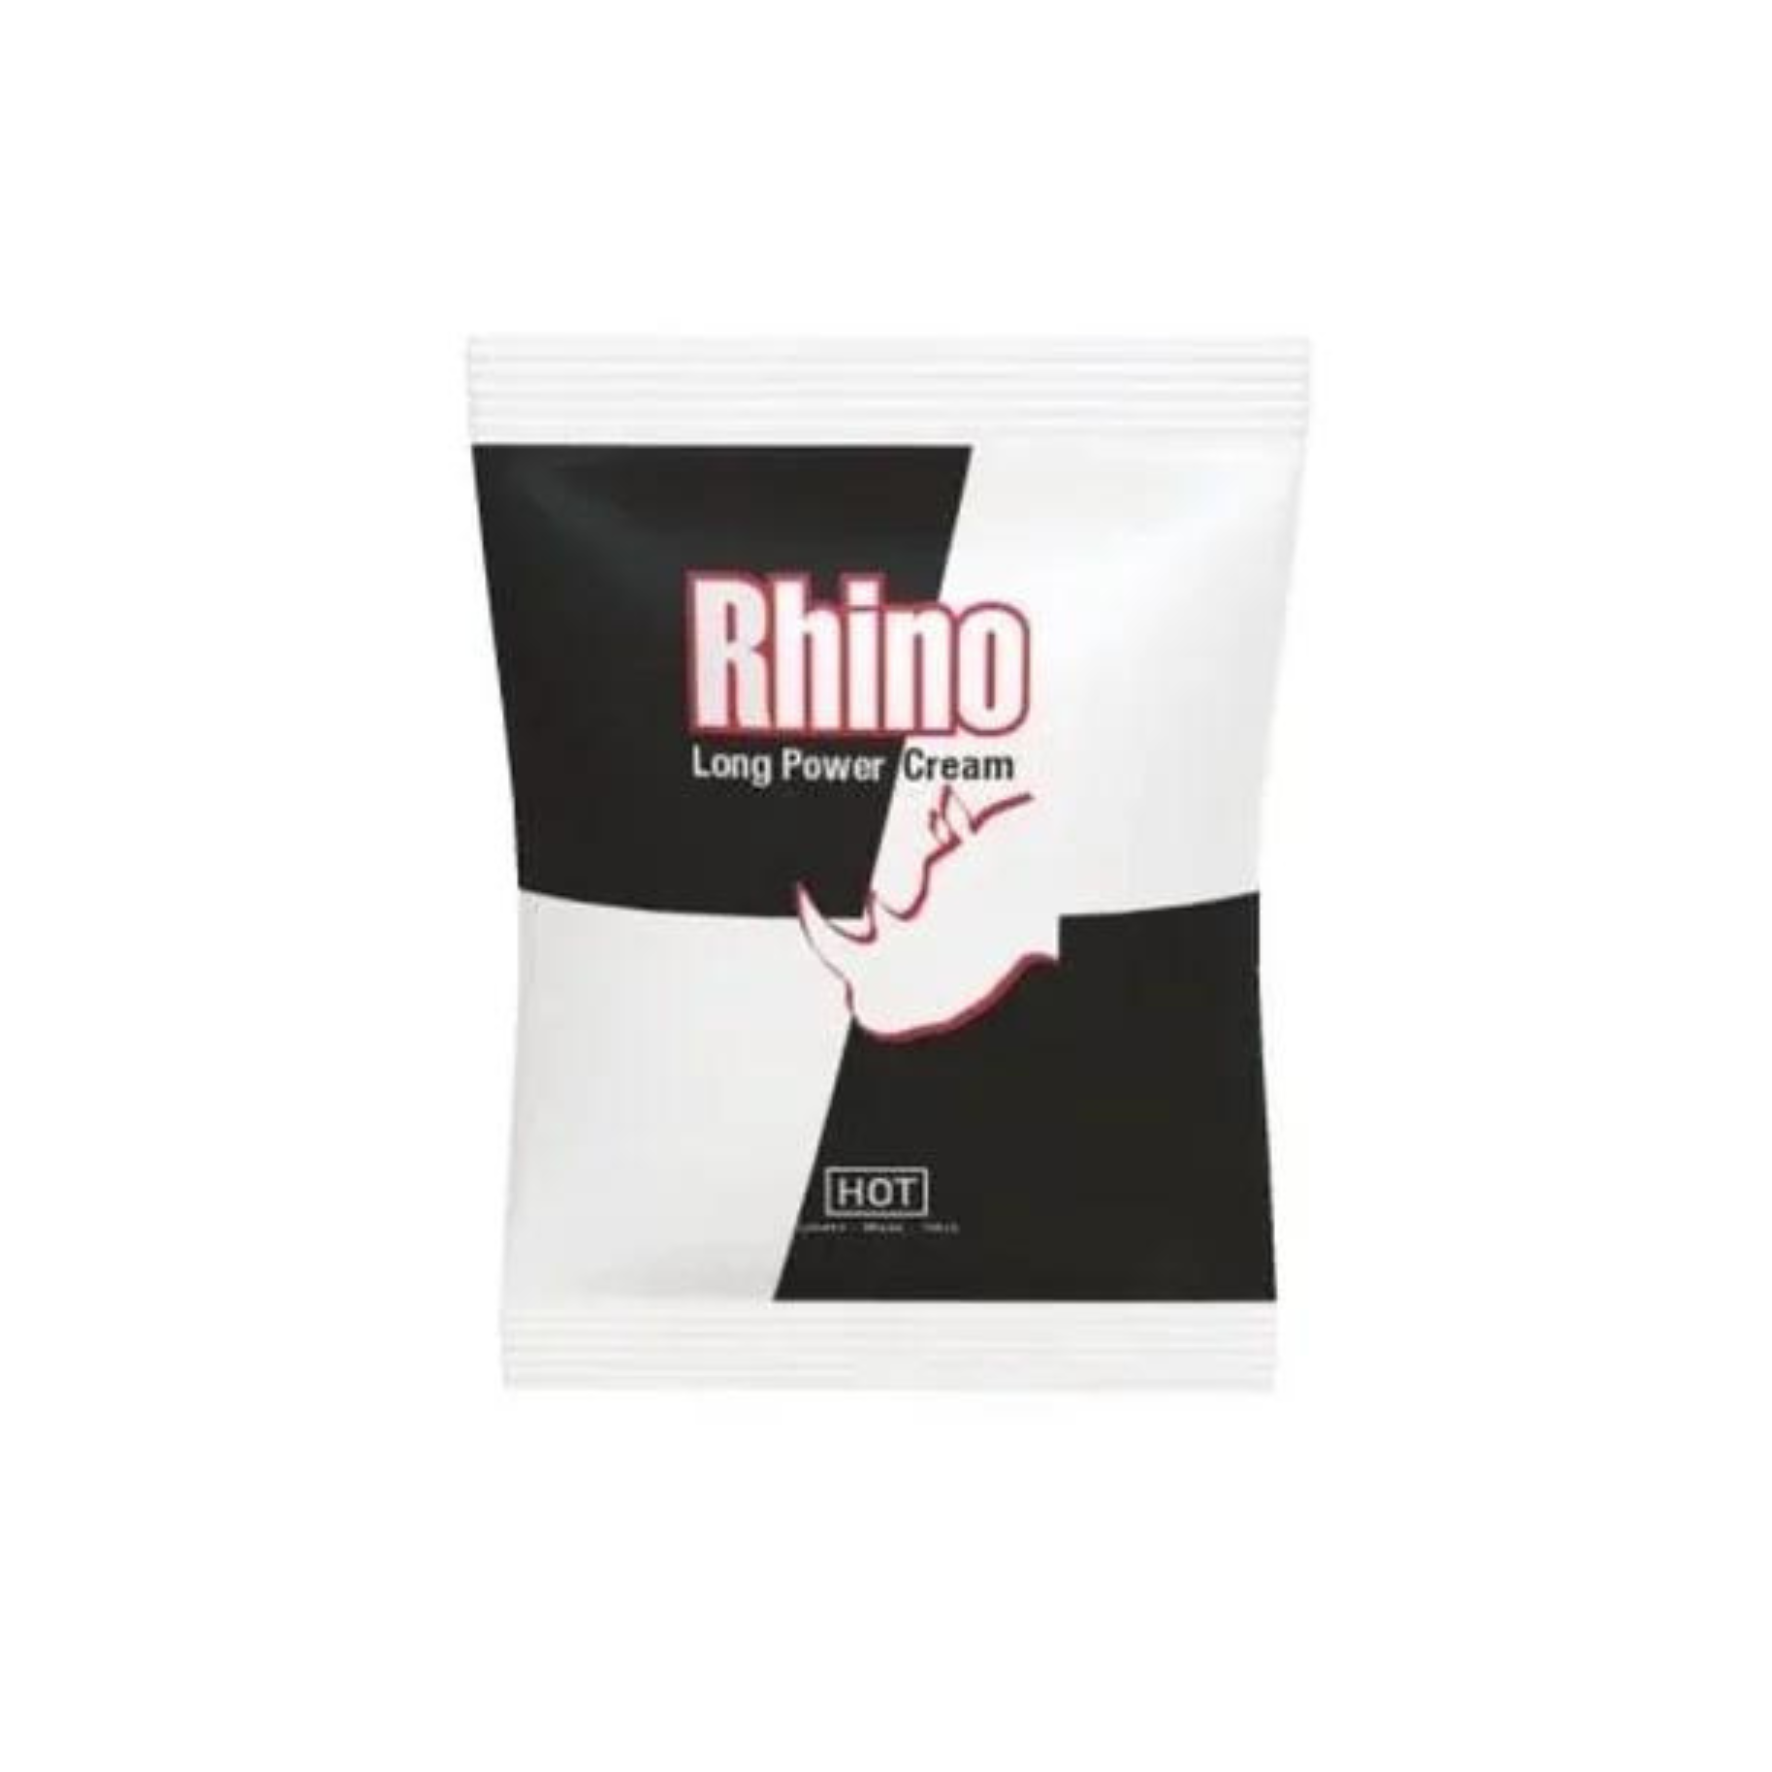 Ejakuliaciją atitolinantis kremas “HOT Rhino Long Power Cream” - 3 ml (mėginukas)